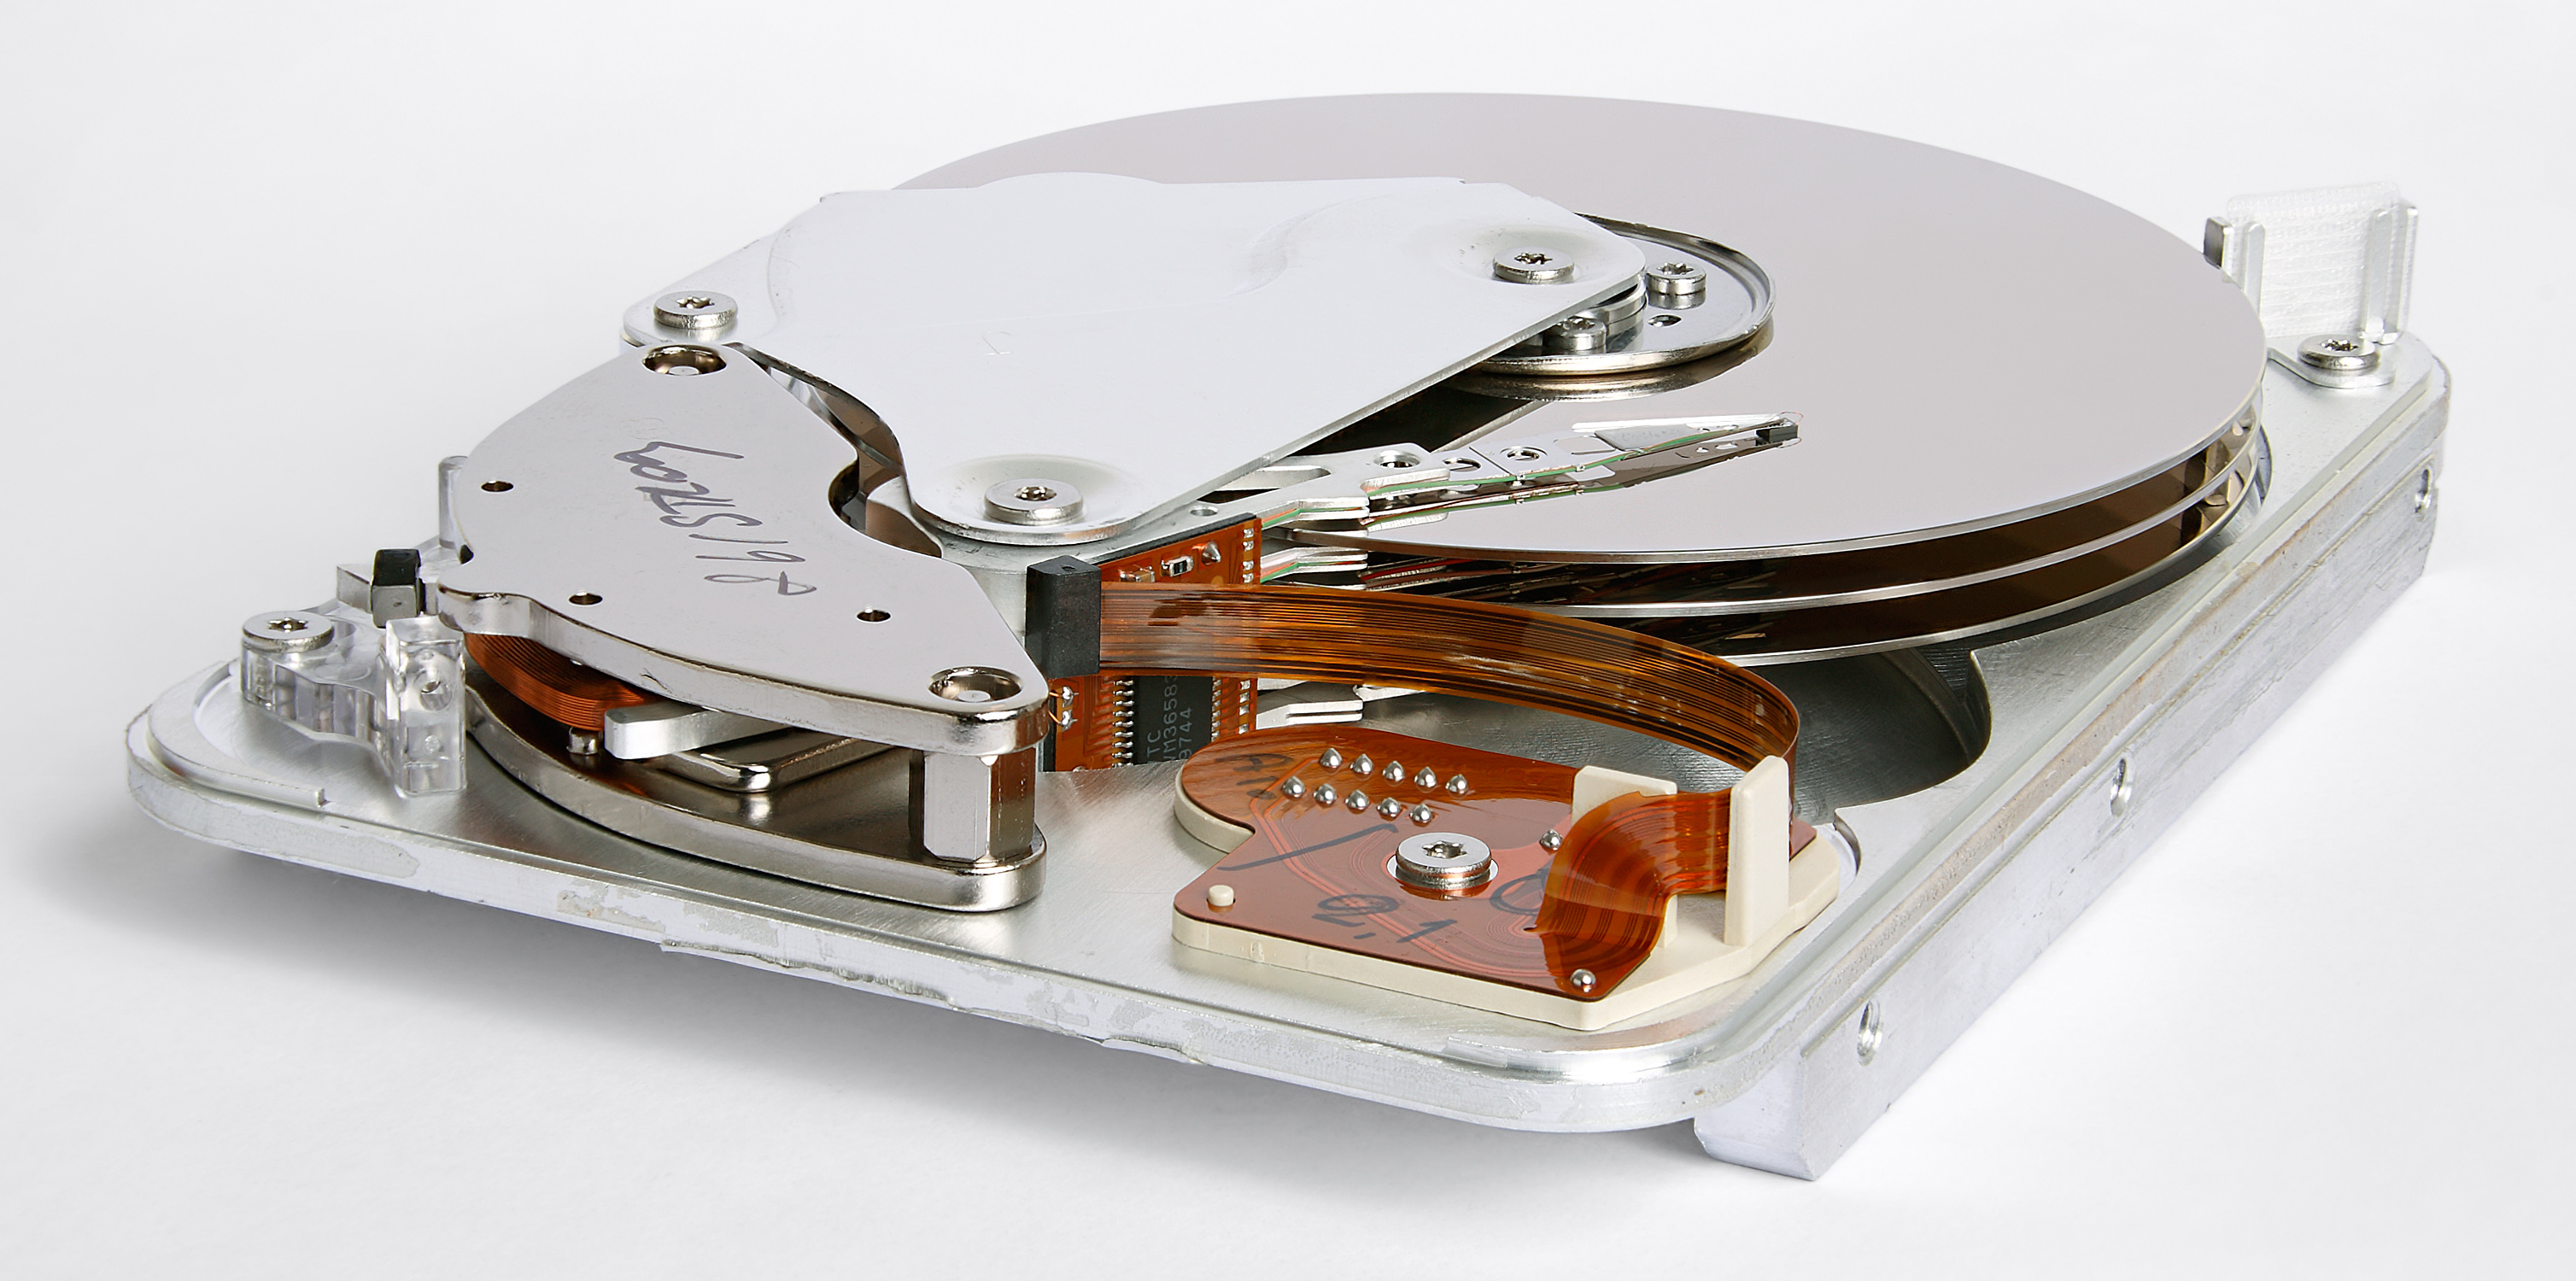 Festplattenlaufwerk (HDD): Eine traditionelle Festplatte, die Daten auf rotierenden Scheiben speichert.
Solid-State-Laufwerk (SSD): Eine moderne Festplatte, die Daten auf Flash-Speicherchips speichert.